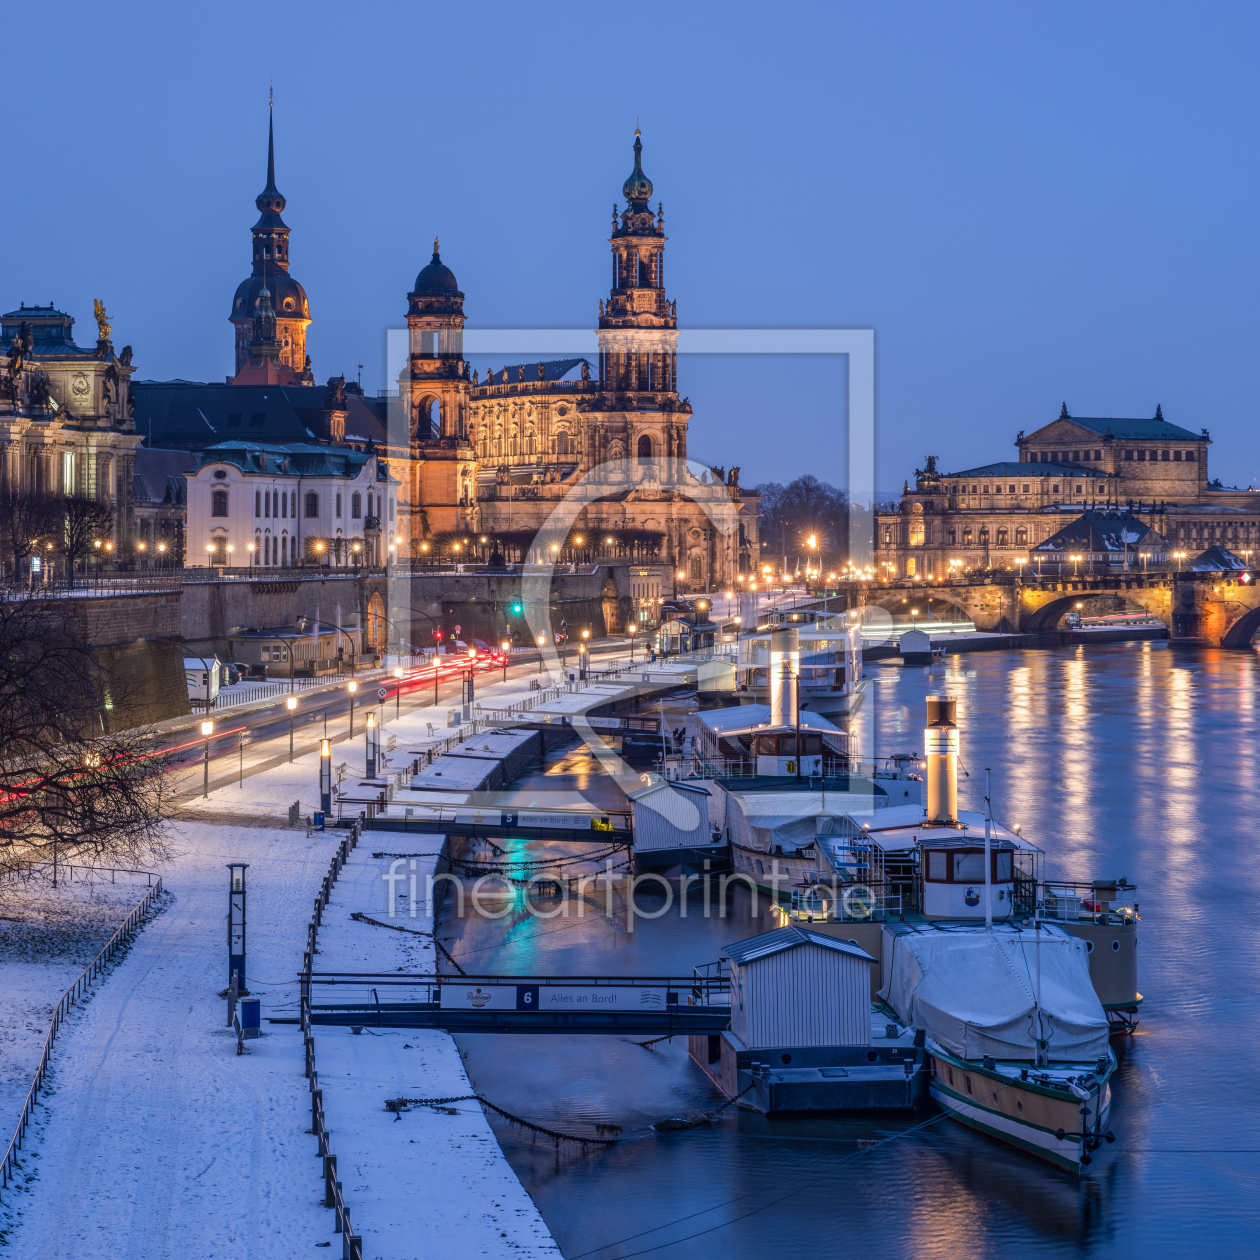 Bild-Nr.: 12811925 Dresden im Winter erstellt von eyetronic